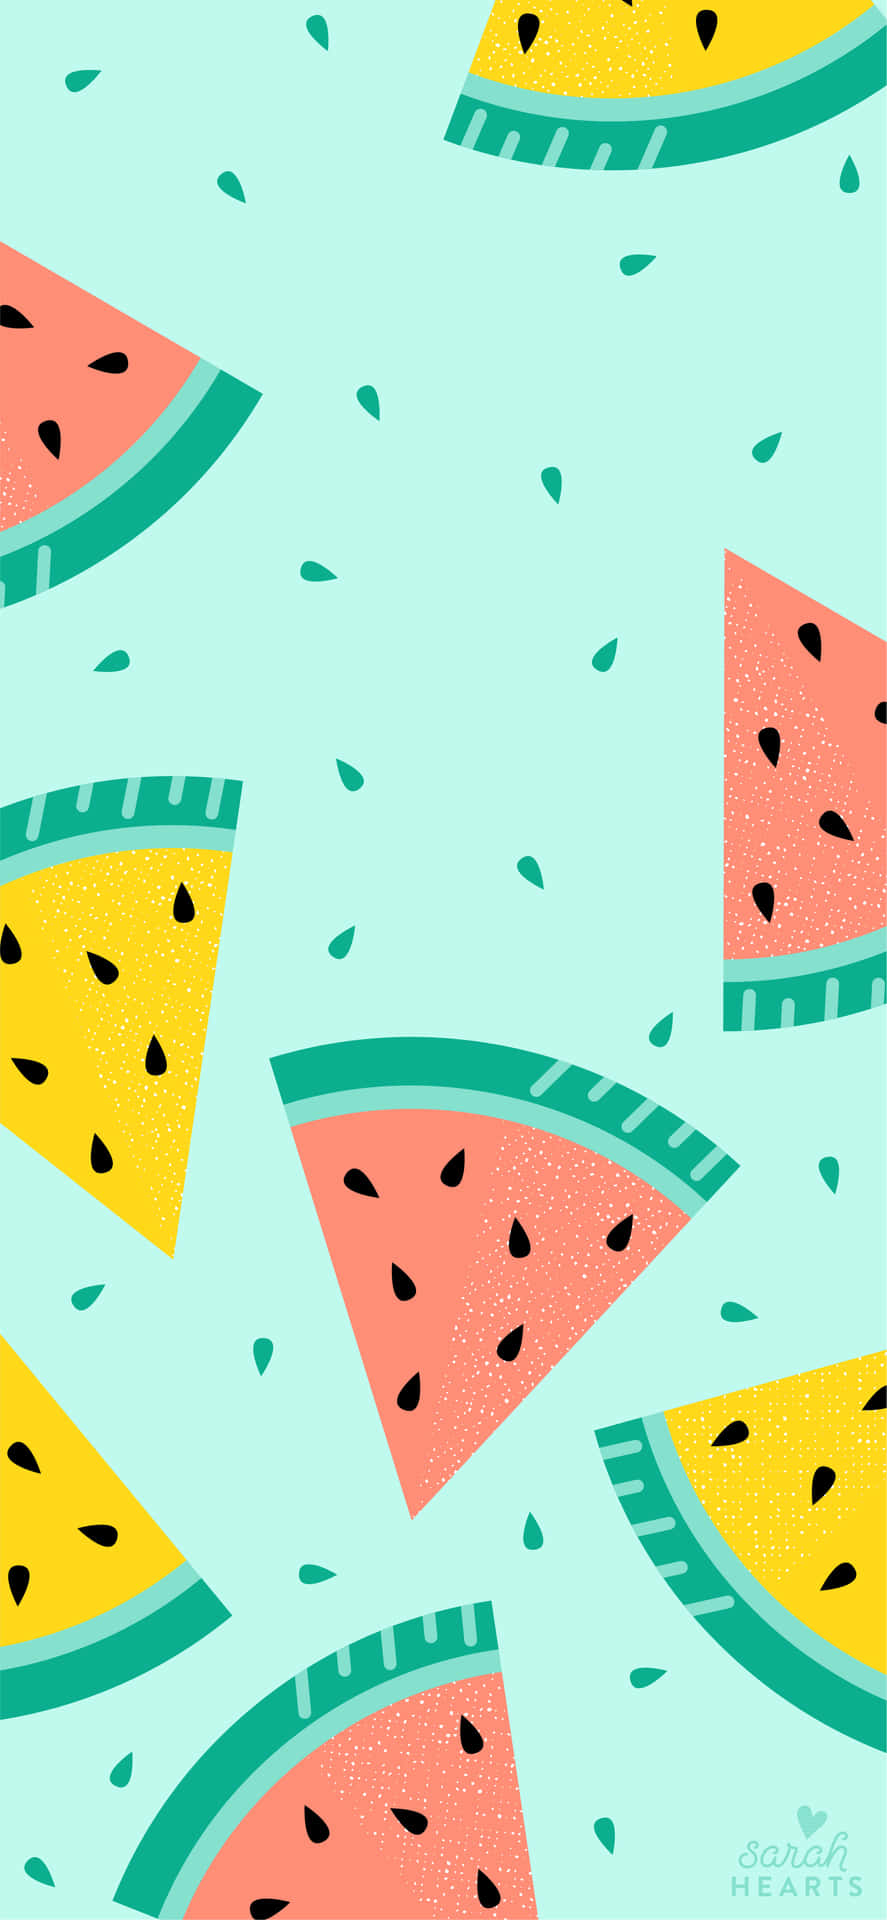 Einköstliches Wassermelonen-iphone Für Einen Erfrischenden Blick Auf Ihr Gerät. Wallpaper